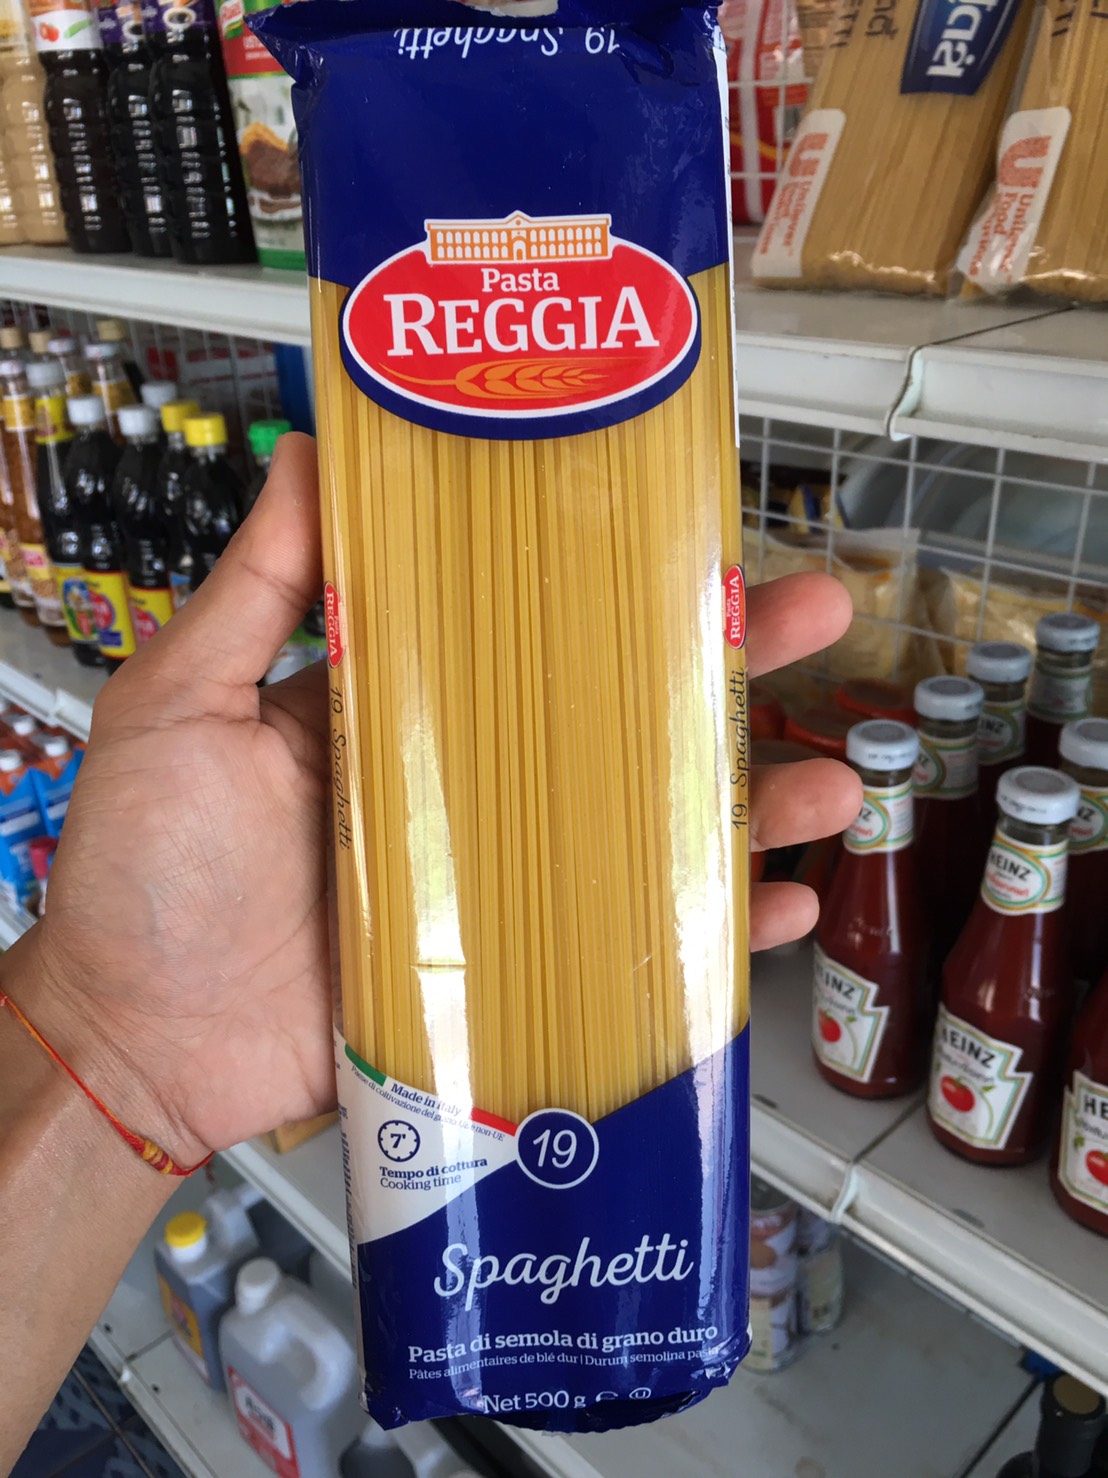 Pasta REGGIA เรจเจีย สปาเกตตี้ / สปาเก็ตตี้ เบอร์ 19 500g